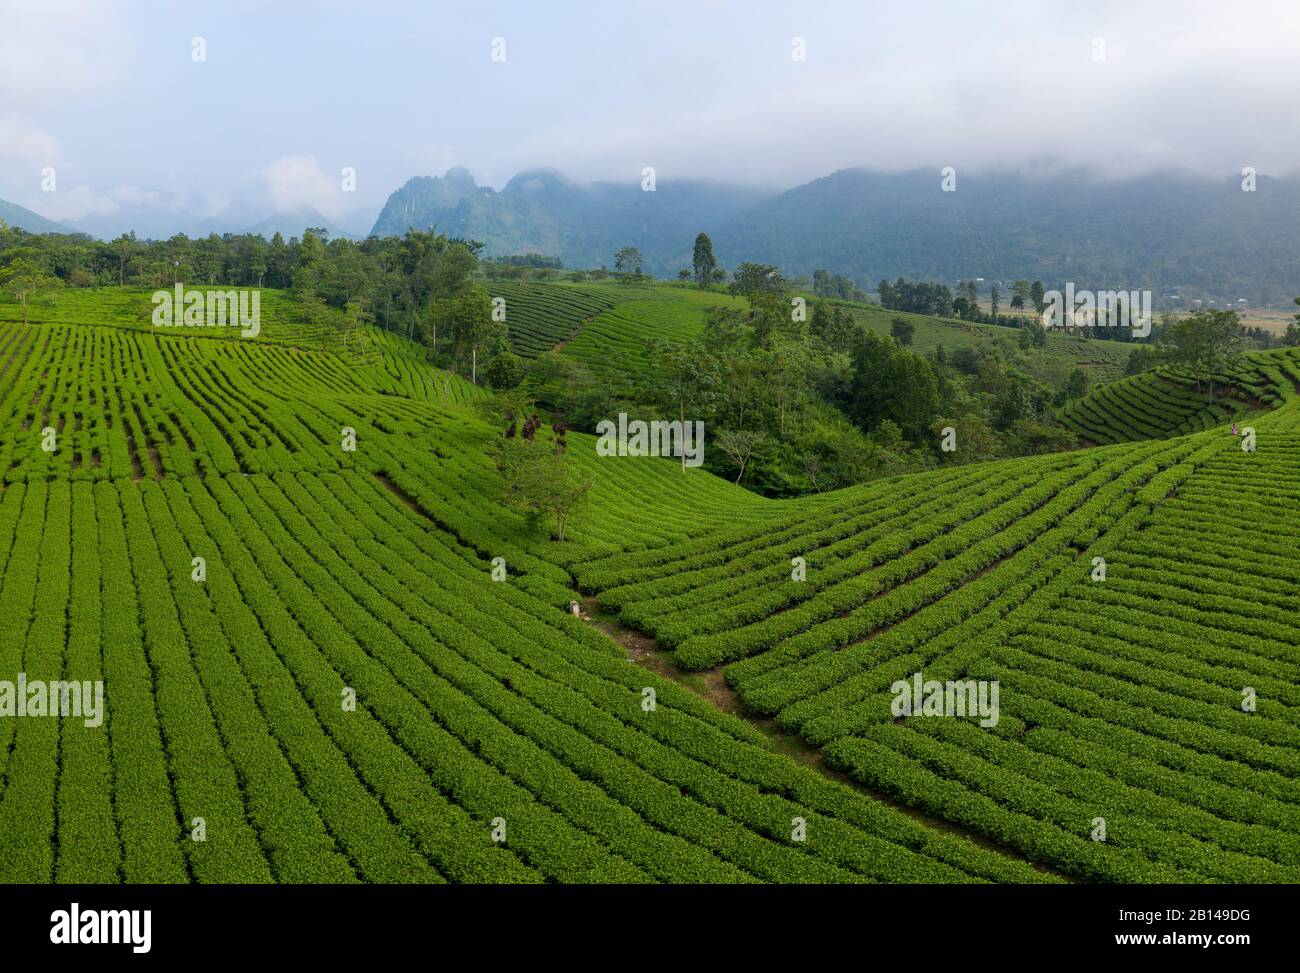 Green tea plantations near Hanoi, Vietnam Stock Photo